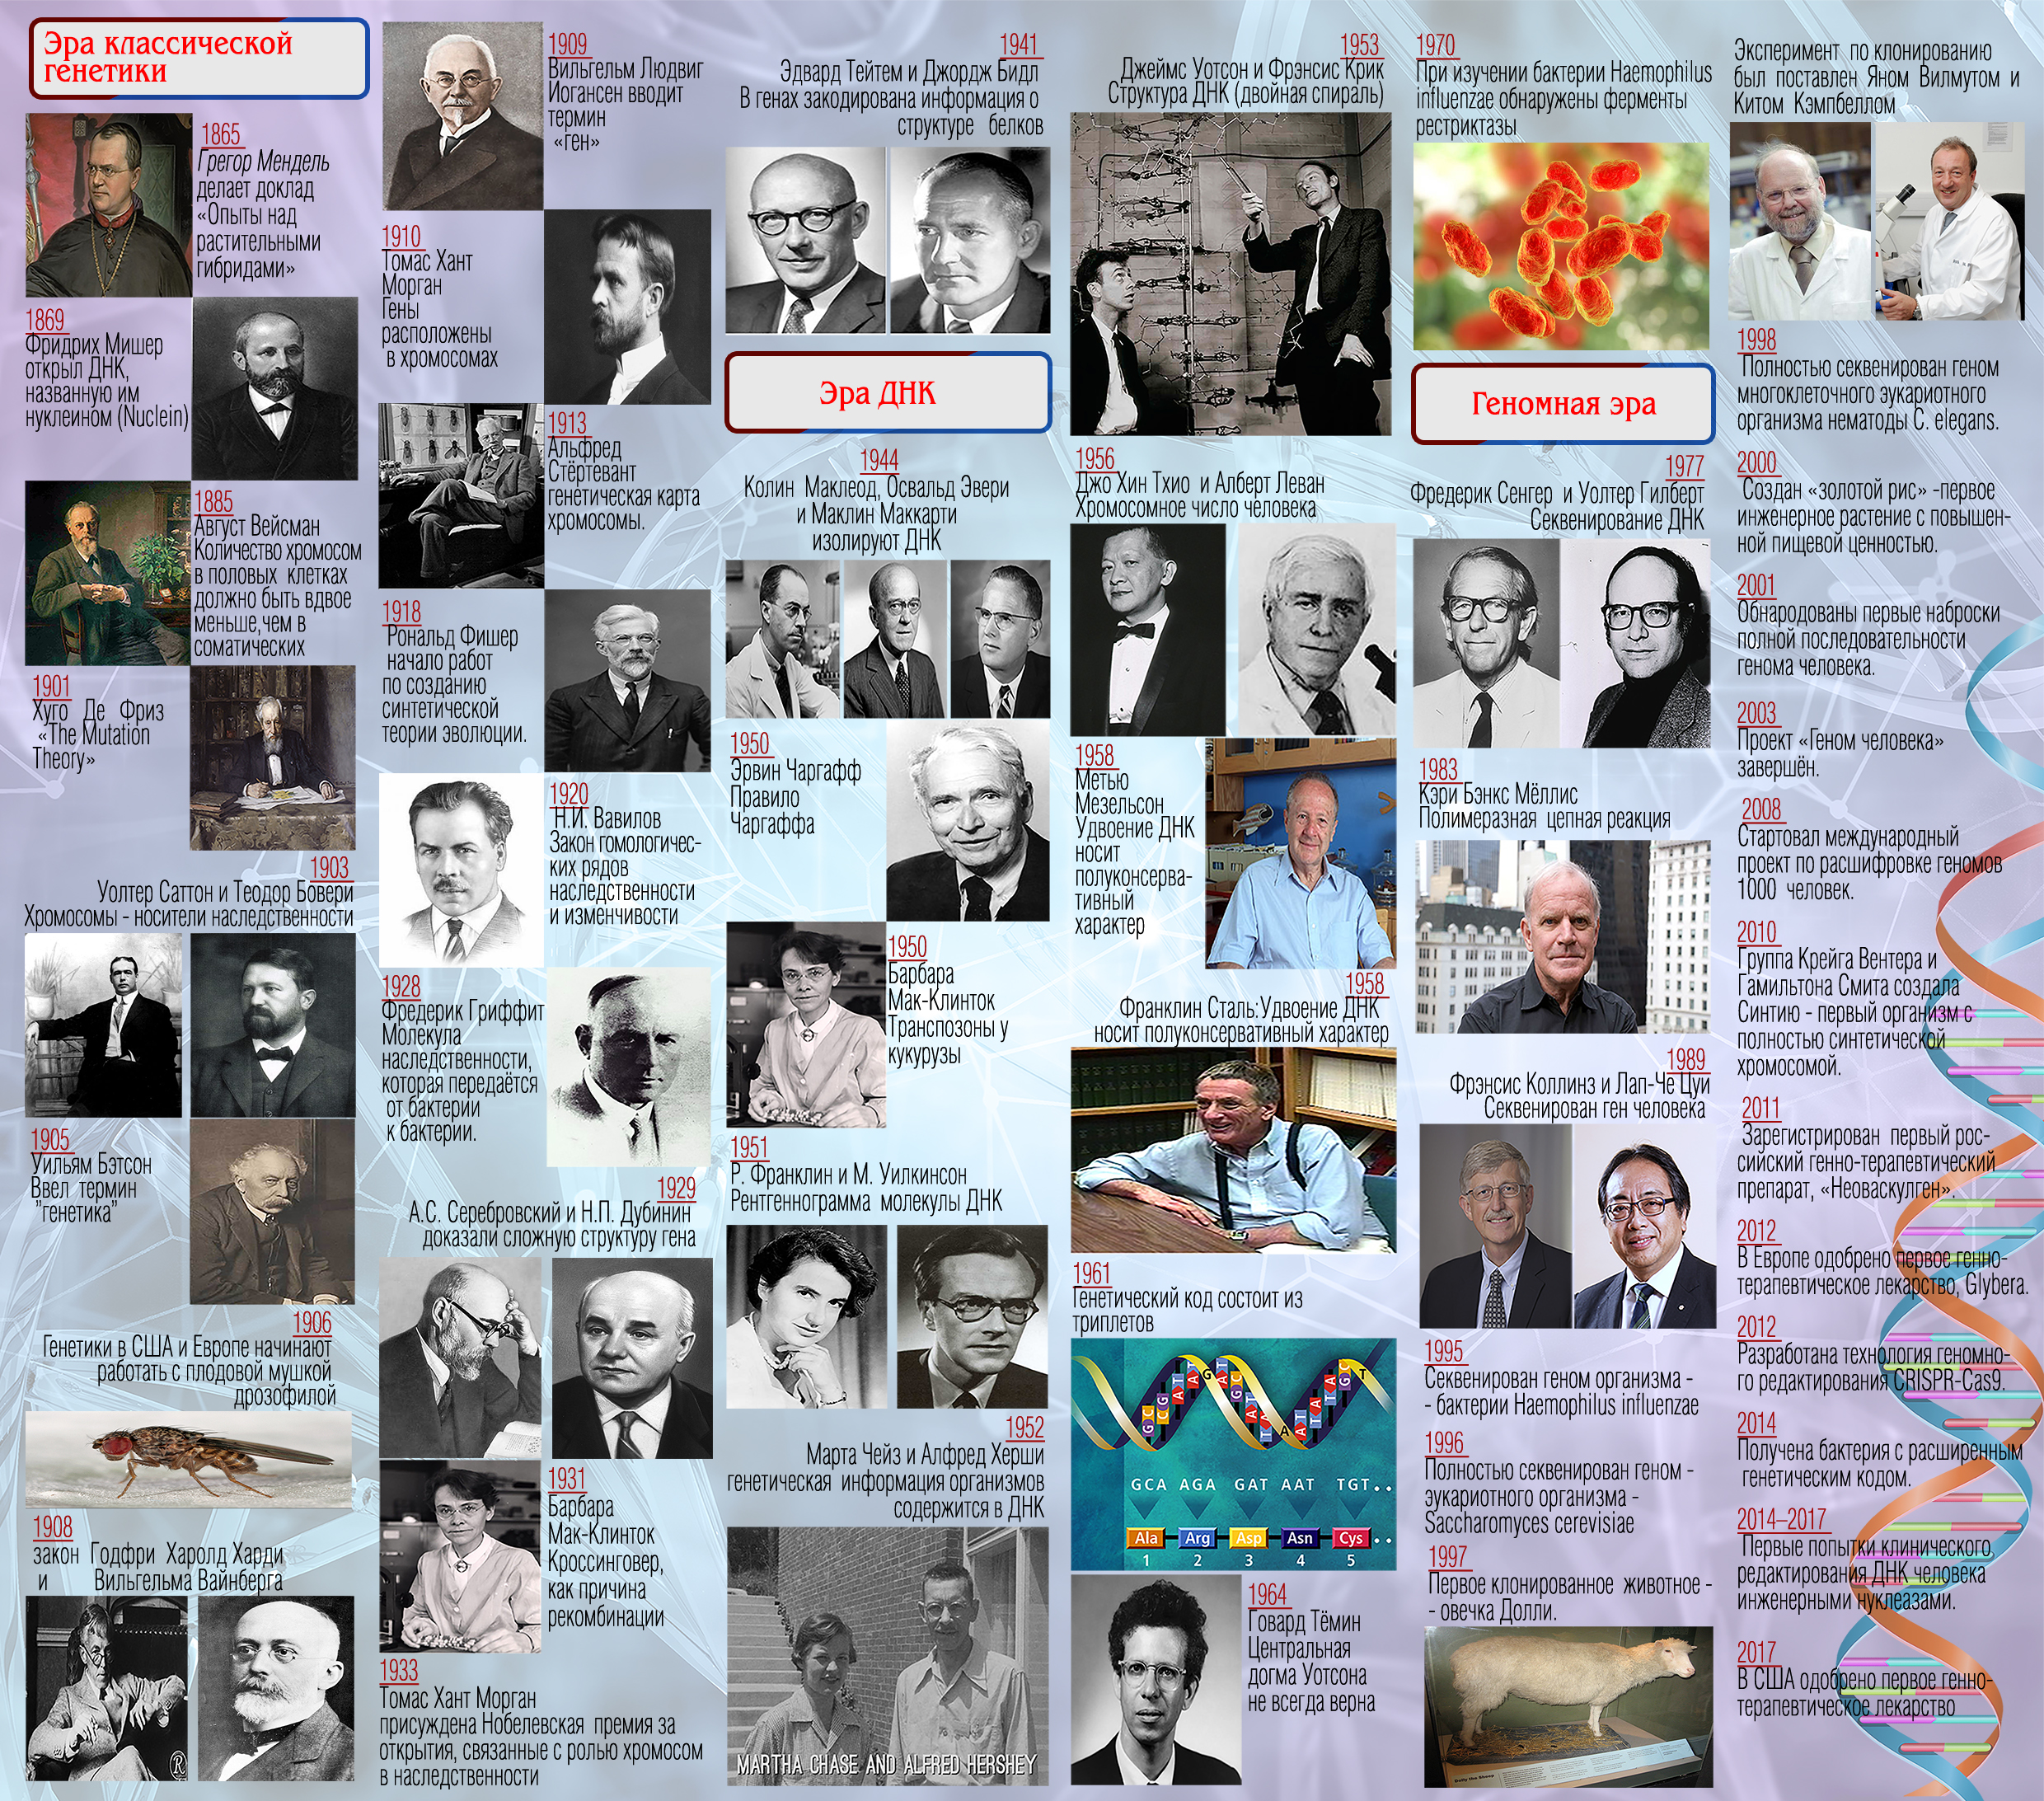 Основные вехи в истории генетики 1865-2017